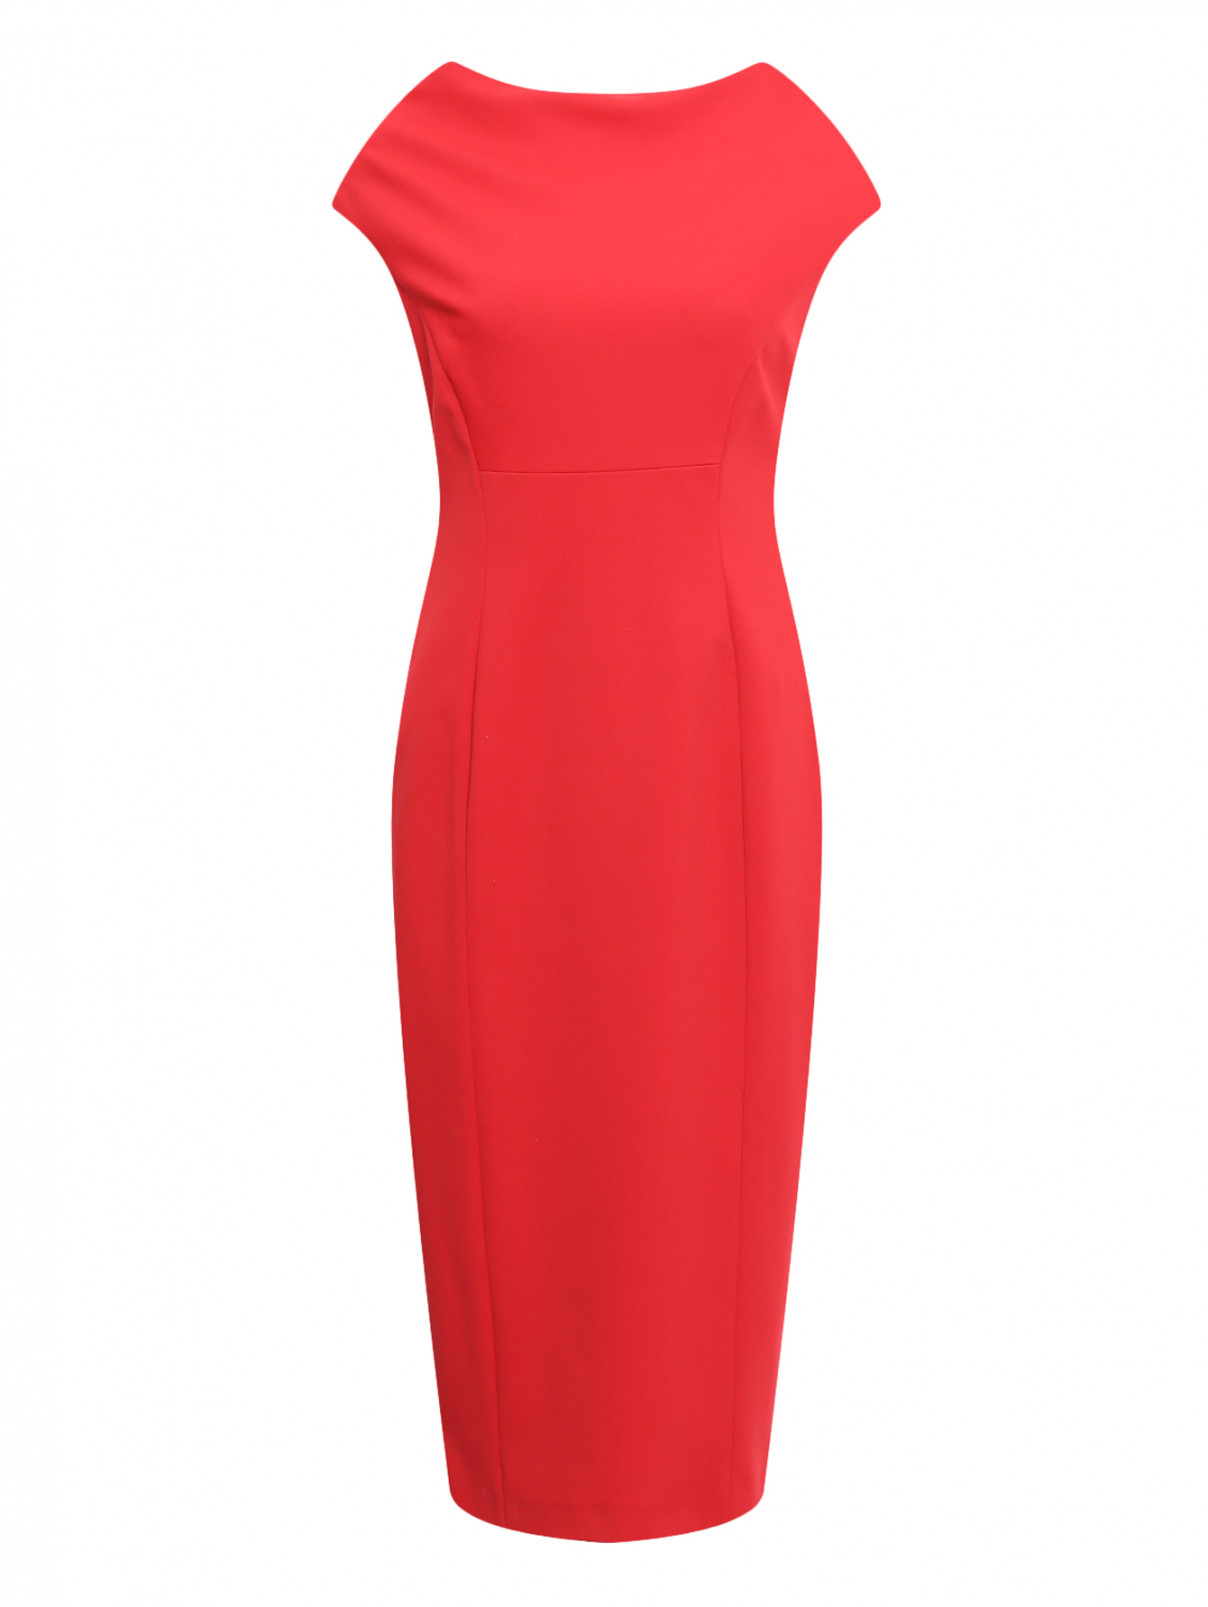 Платье-футляр с короткими рукавами Marina Rinaldi  –  Общий вид  – Цвет:  Красный